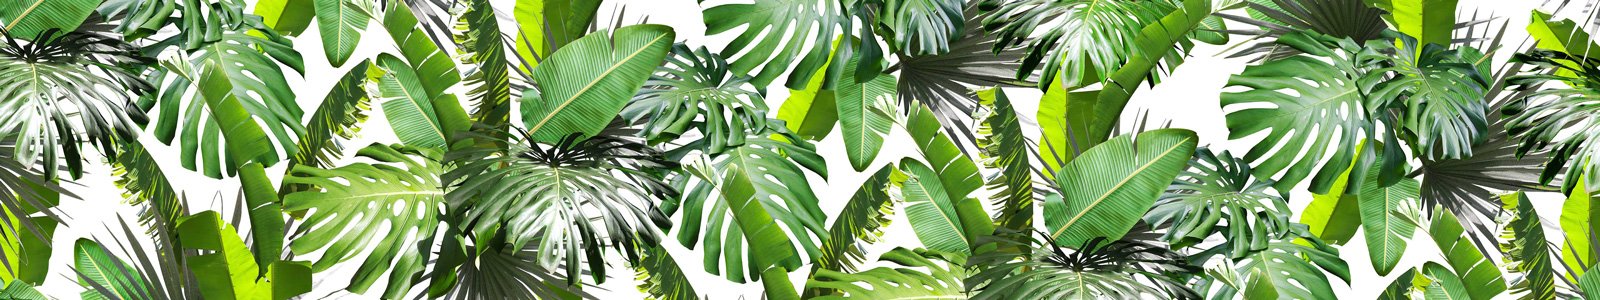 №6811 - Листья тропических растений